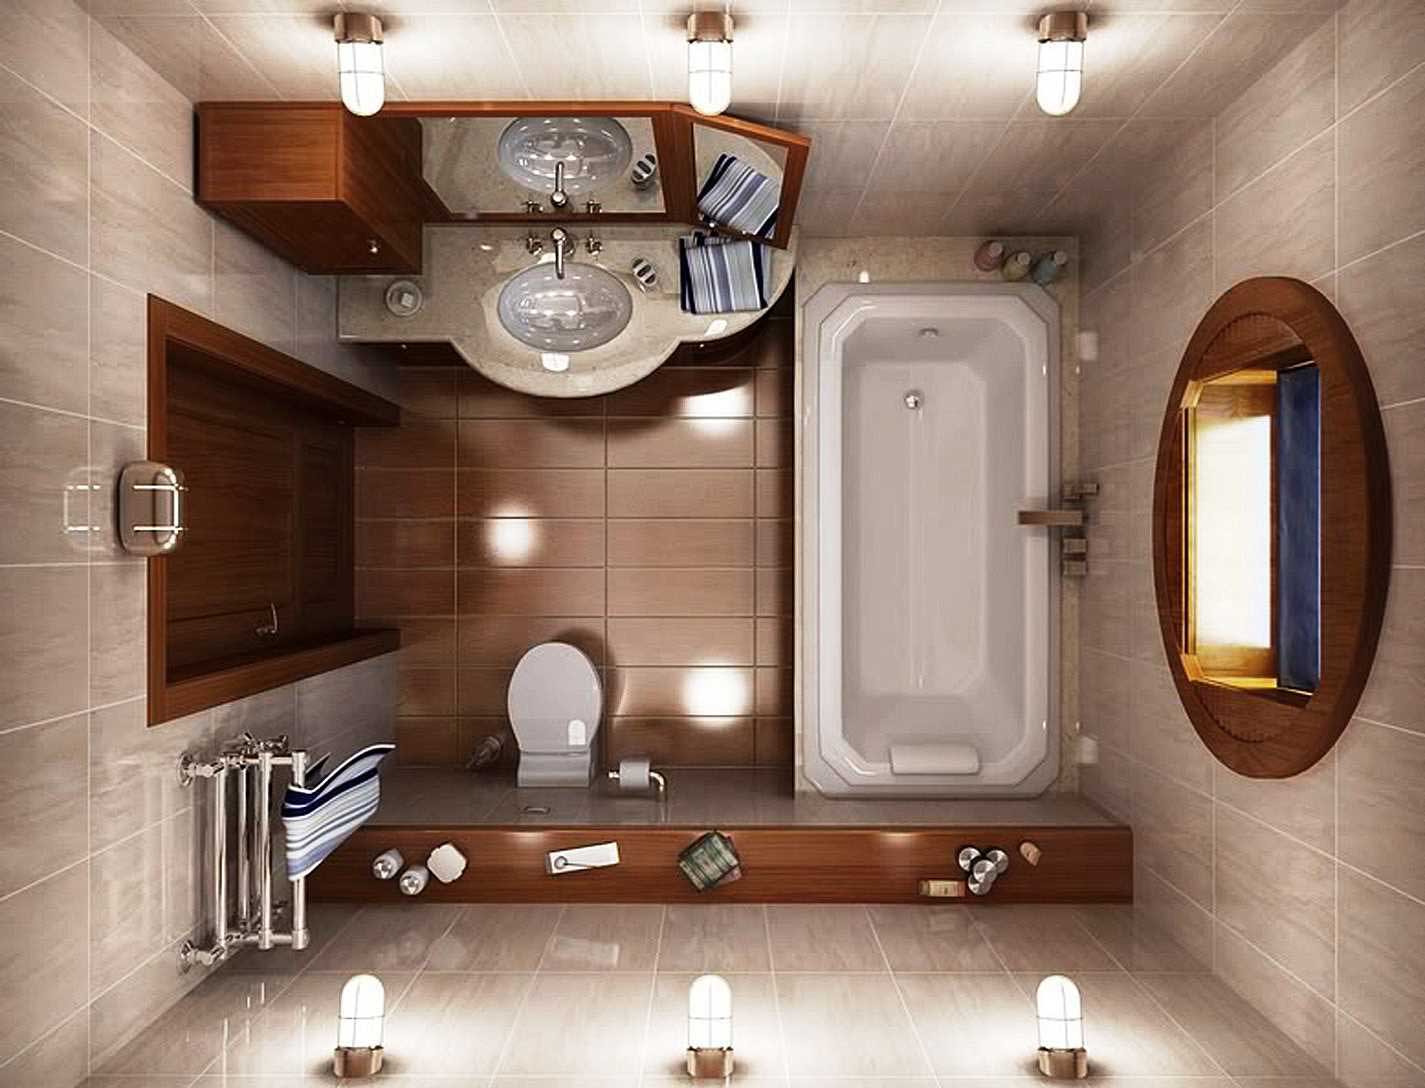 Thiết kế phòng tắm đơn giản và sang trọng là sự kết hợp tuyệt vời giữa chức năng và thẩm mỹ. Với một thiết kế đơn giản và tối giản, bạn sẽ có thể tạo ra một không gian tinh tế và hiện đại. Hãy xem ngay hình ảnh thiết kế phòng tắm đơn giản và sang trọng để có những ý tưởng sáng tạo và độc đáo cho không gian phòng tắm của bạn.